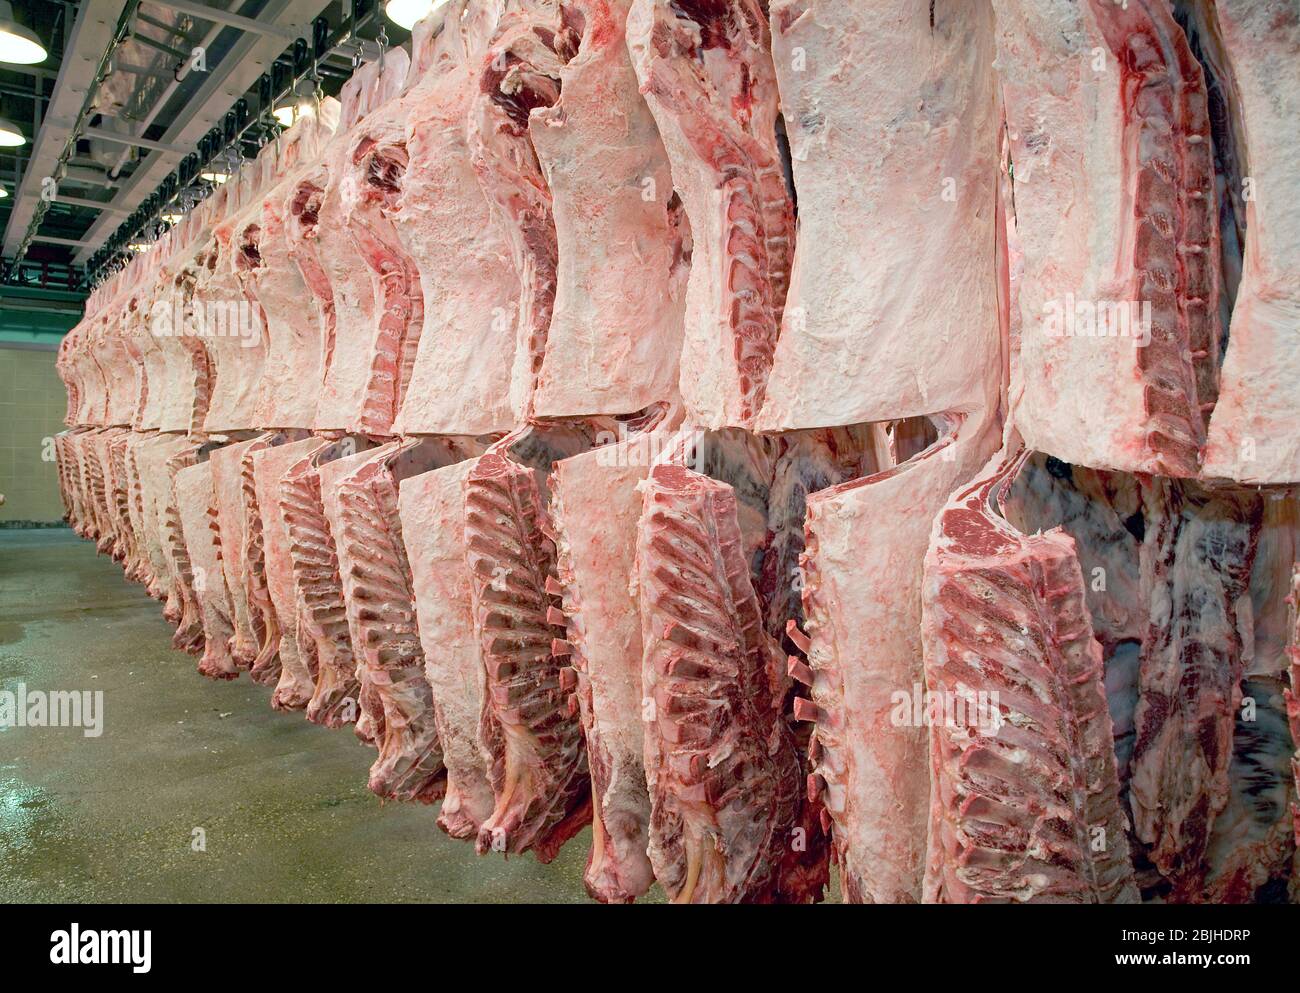 Frisch geschlachtete Schlachtkörper hängen in einem Kühlraum der Fleischverarbeitungsanlage. Das Lendenauge wird ausgesetzt, um die Qualität zu bestimmen. Stockfoto